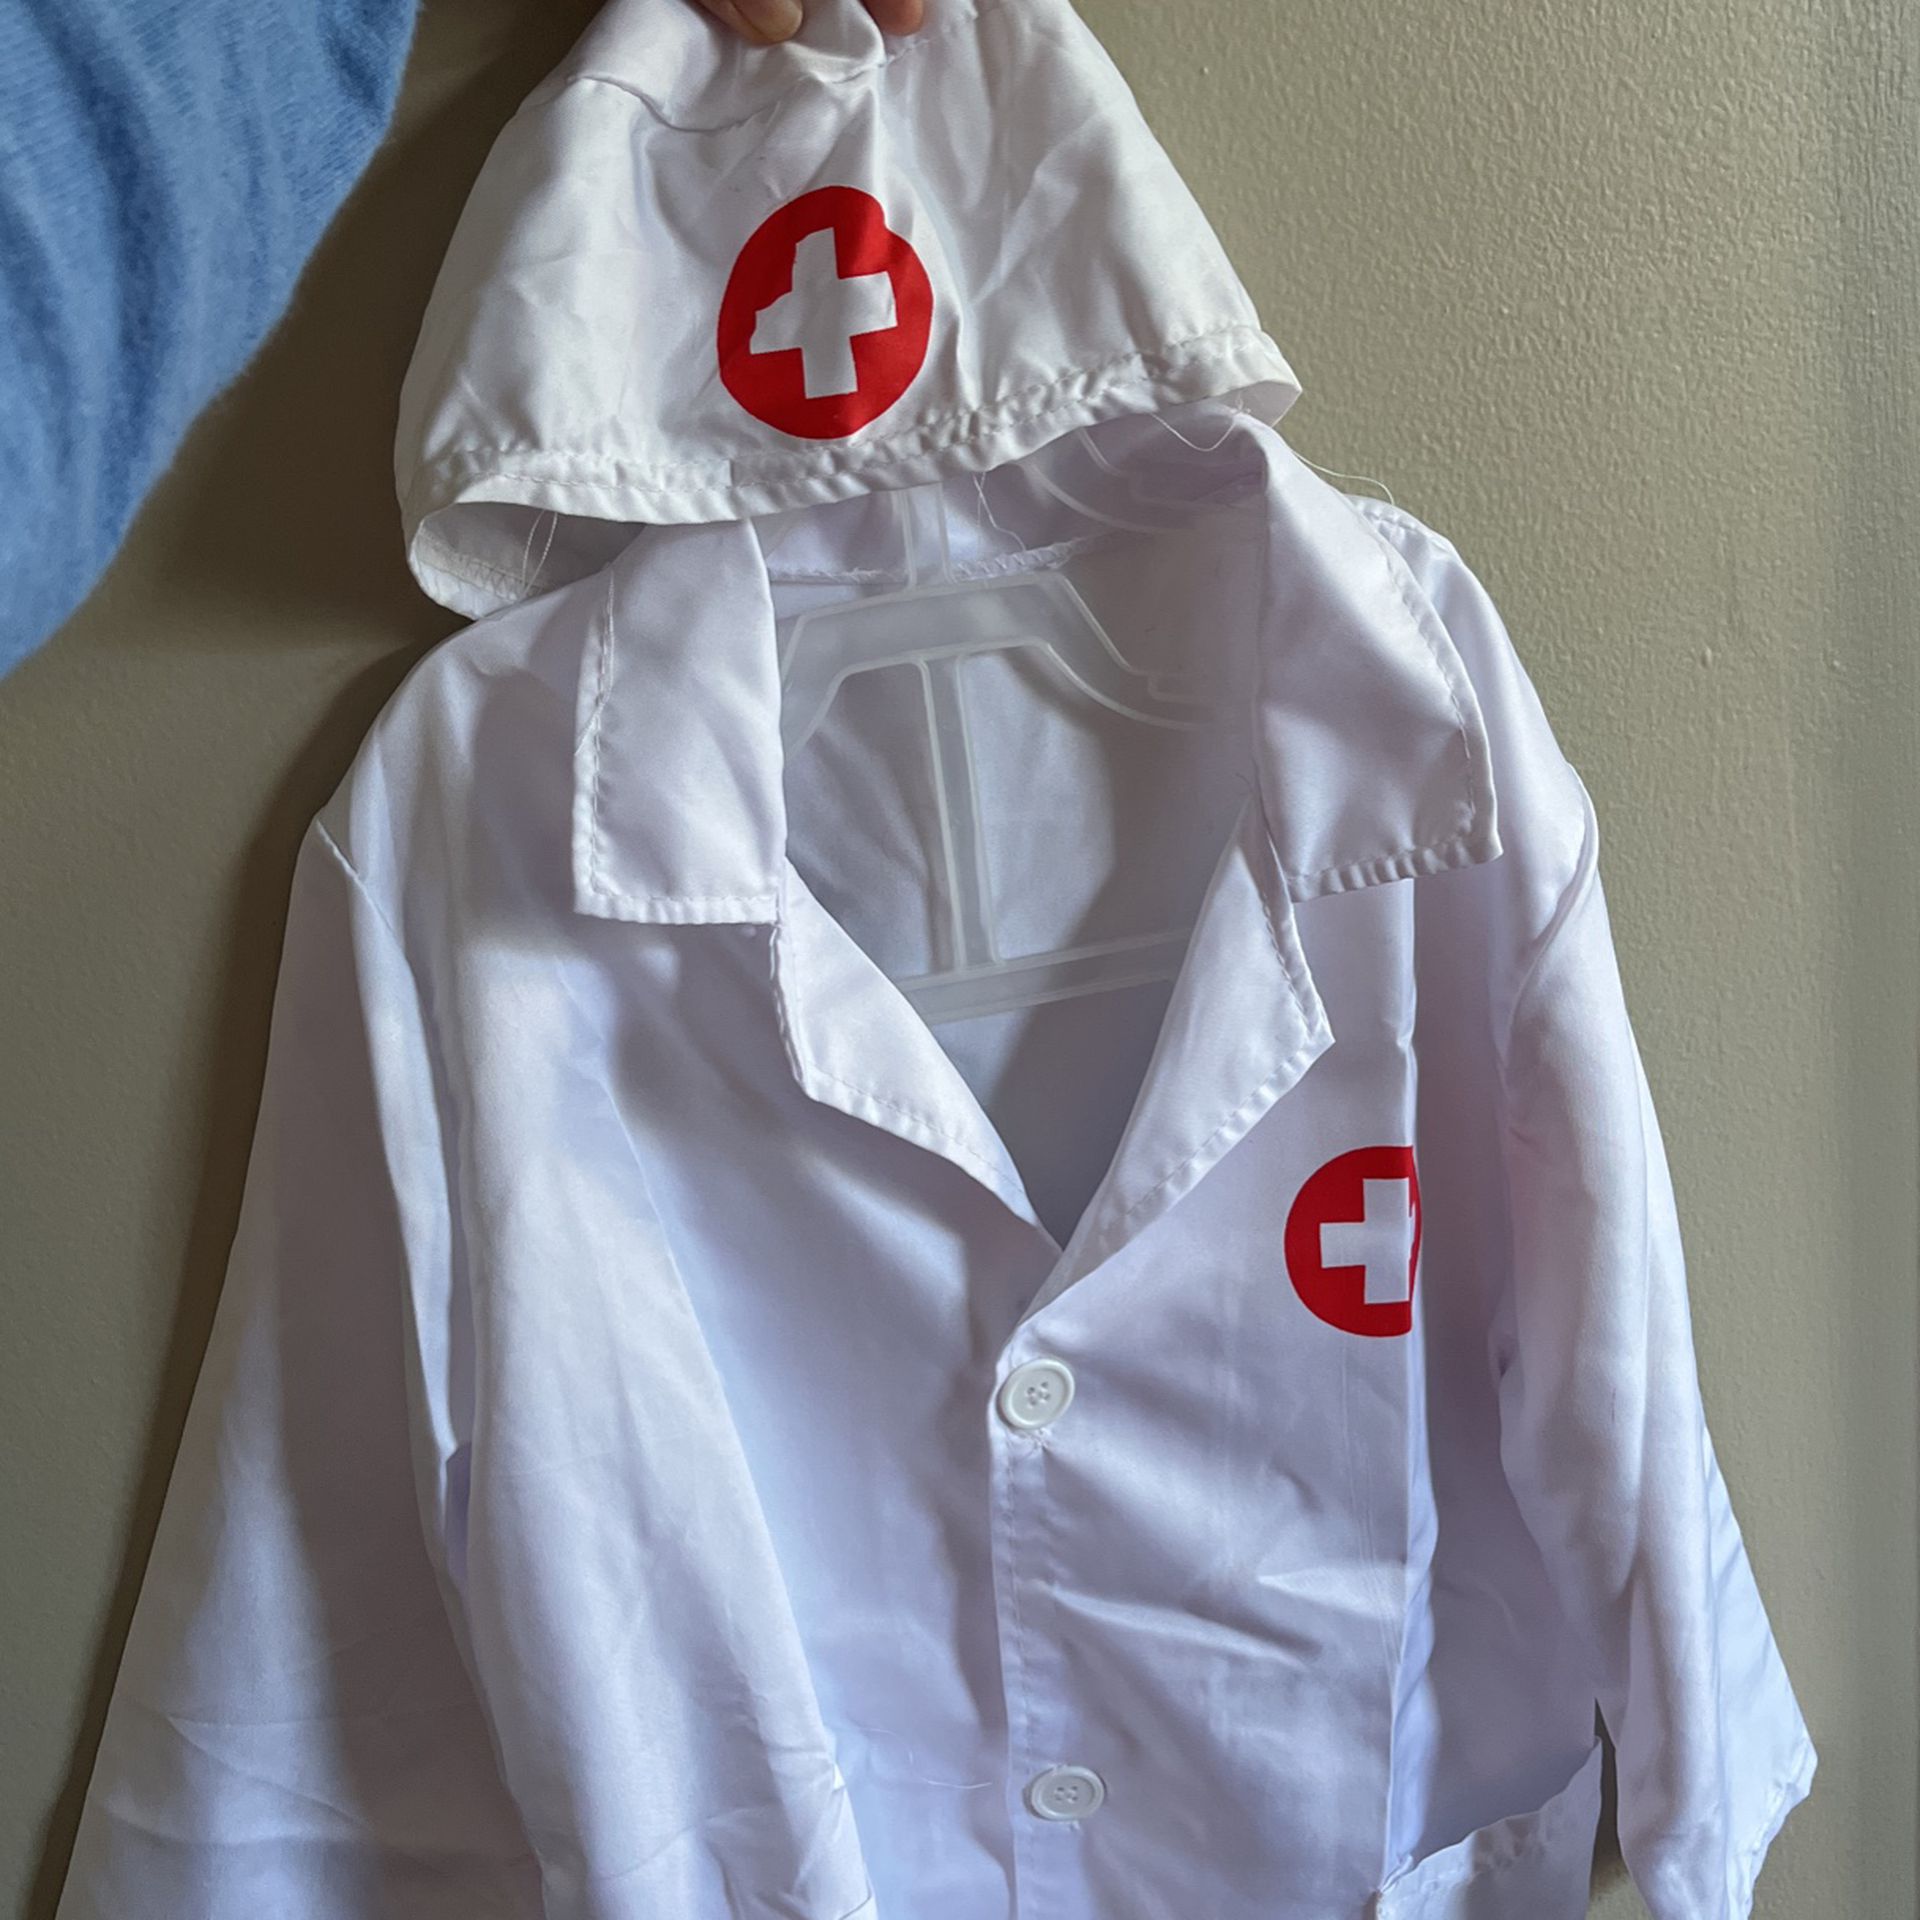 Doctors Coat For Kids 4t-5t